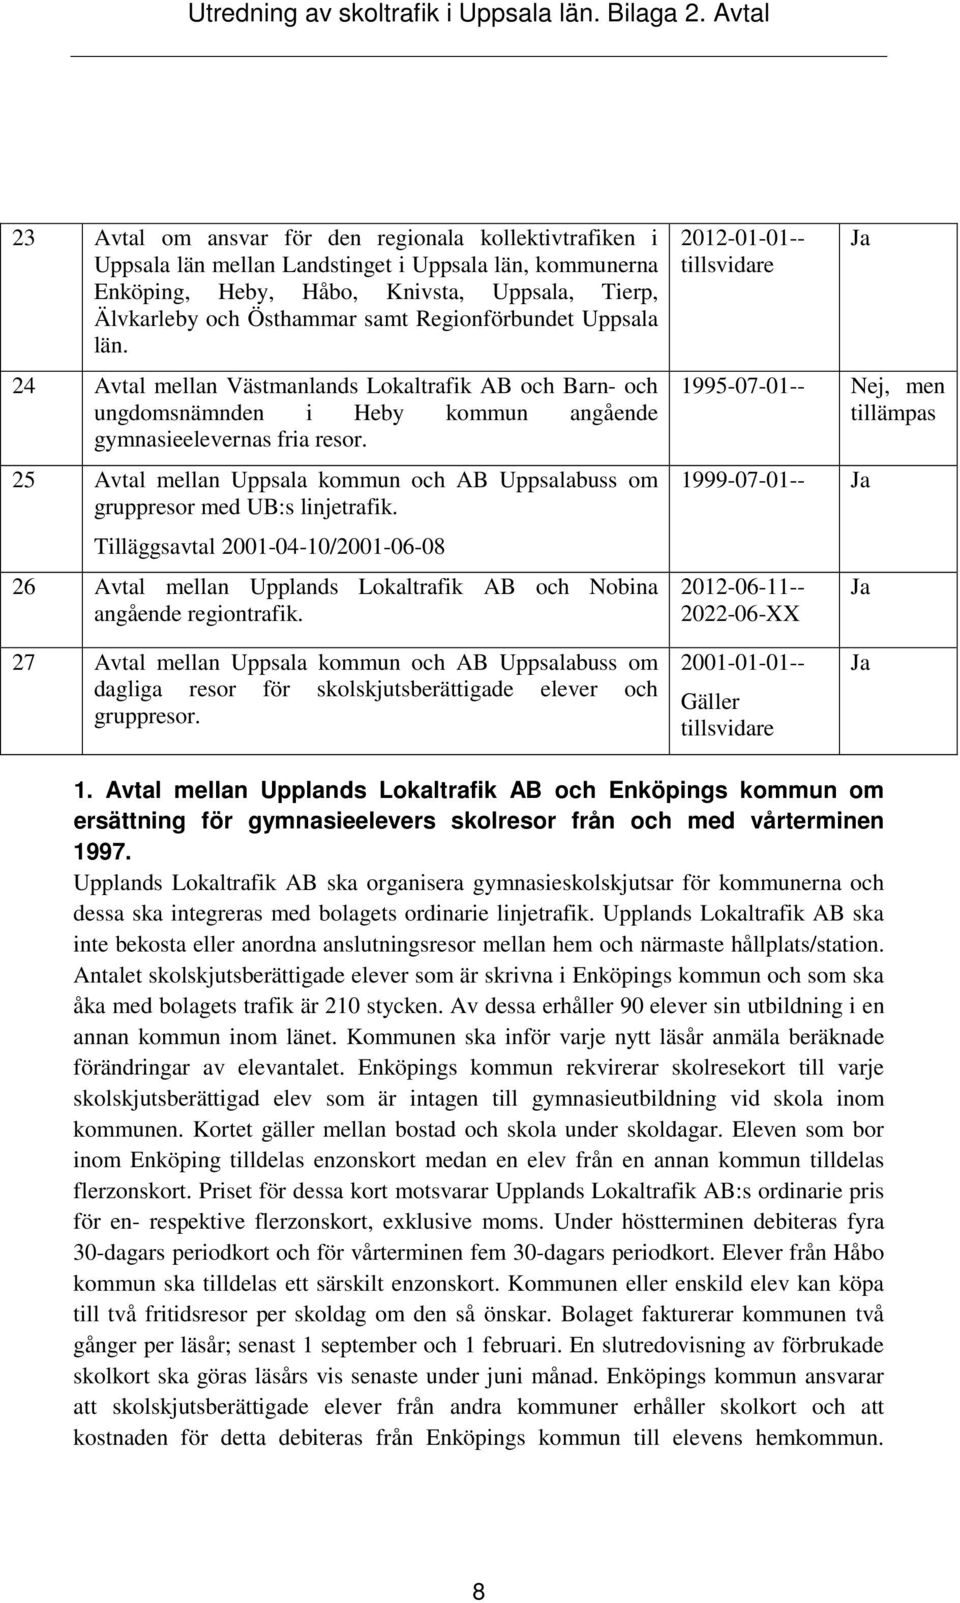 25 Avtal mellan Uppsala kommun och AB Uppsalabuss om gruppresor med UB:s linjetrafik. Tilläggsavtal 2001-04-10/2001-06-08 26 Avtal mellan Upplands Lokaltrafik AB och Nobina angående regiontrafik.